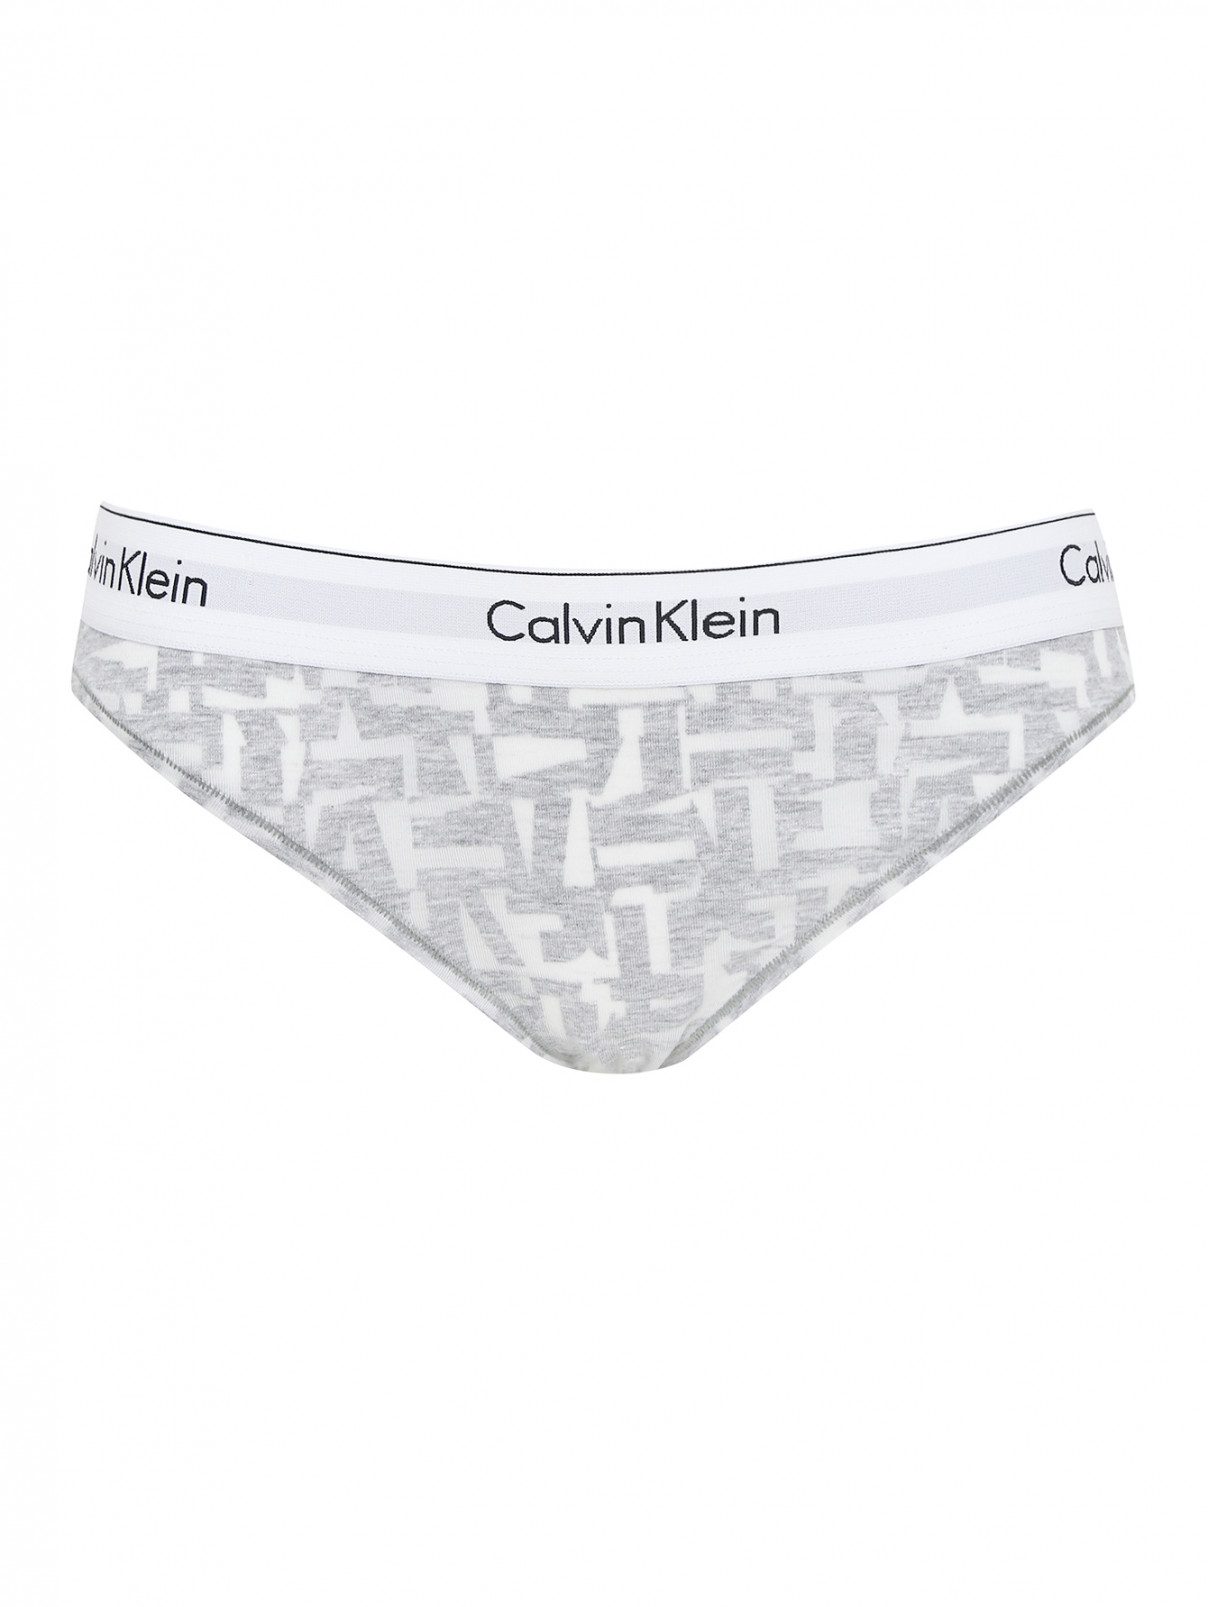 Трусы из хлопка Calvin Klein  –  Общий вид  – Цвет:  Серый